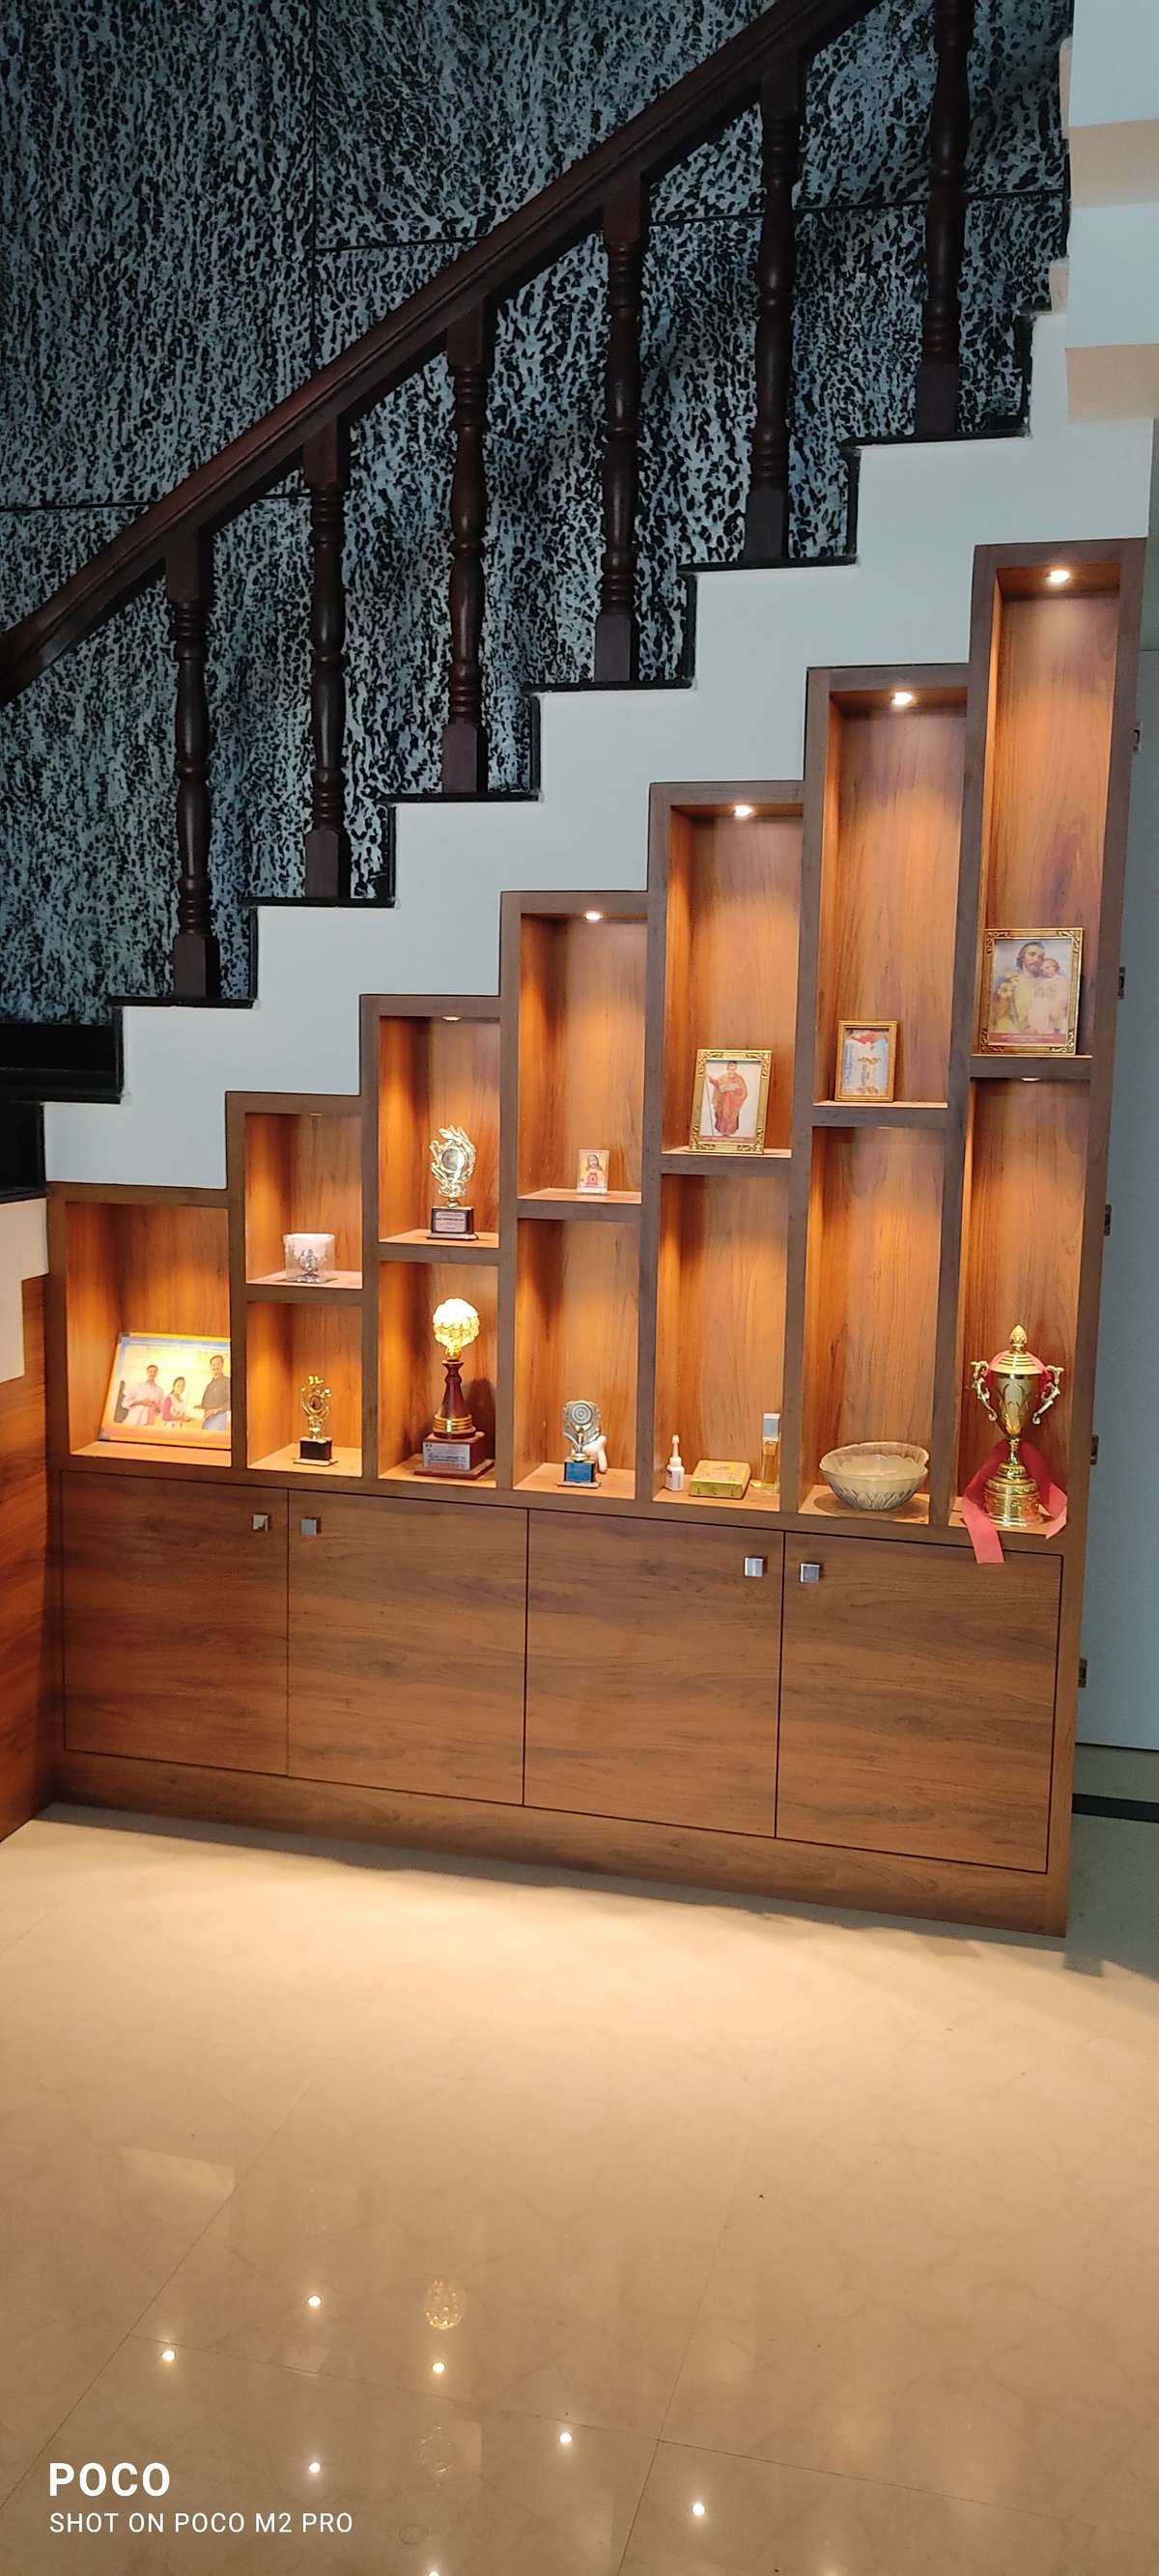 Designs by Interior Designer Aji Haridas, Thrissur | Kolo